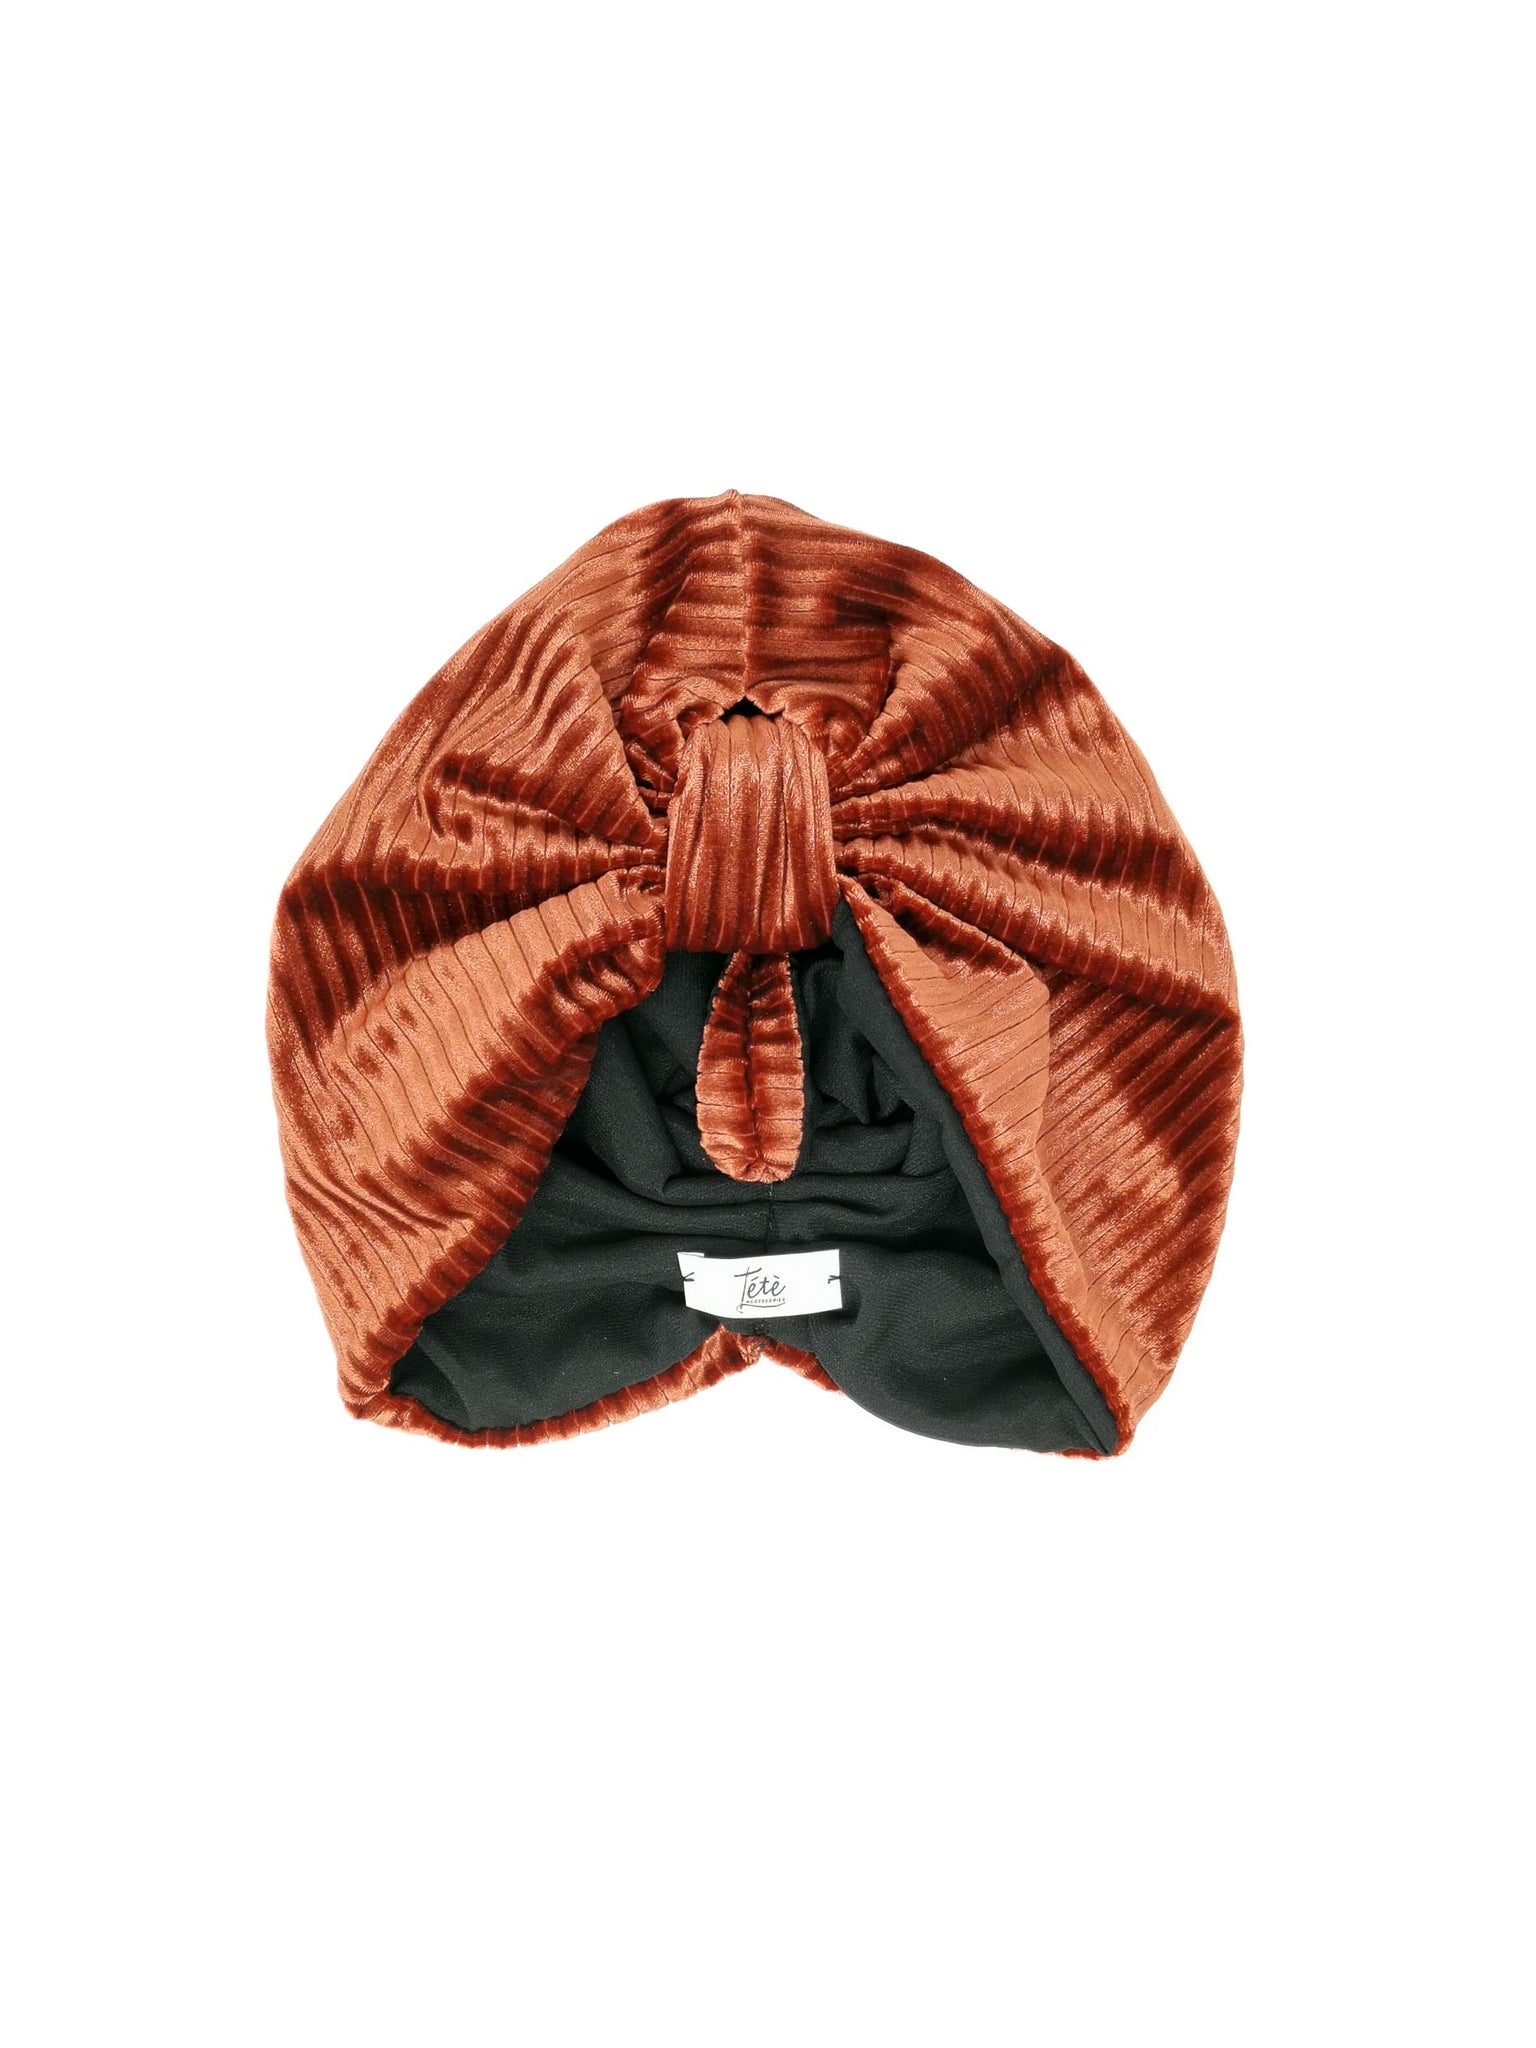 Copper-coloured velvet turban "Rose" model